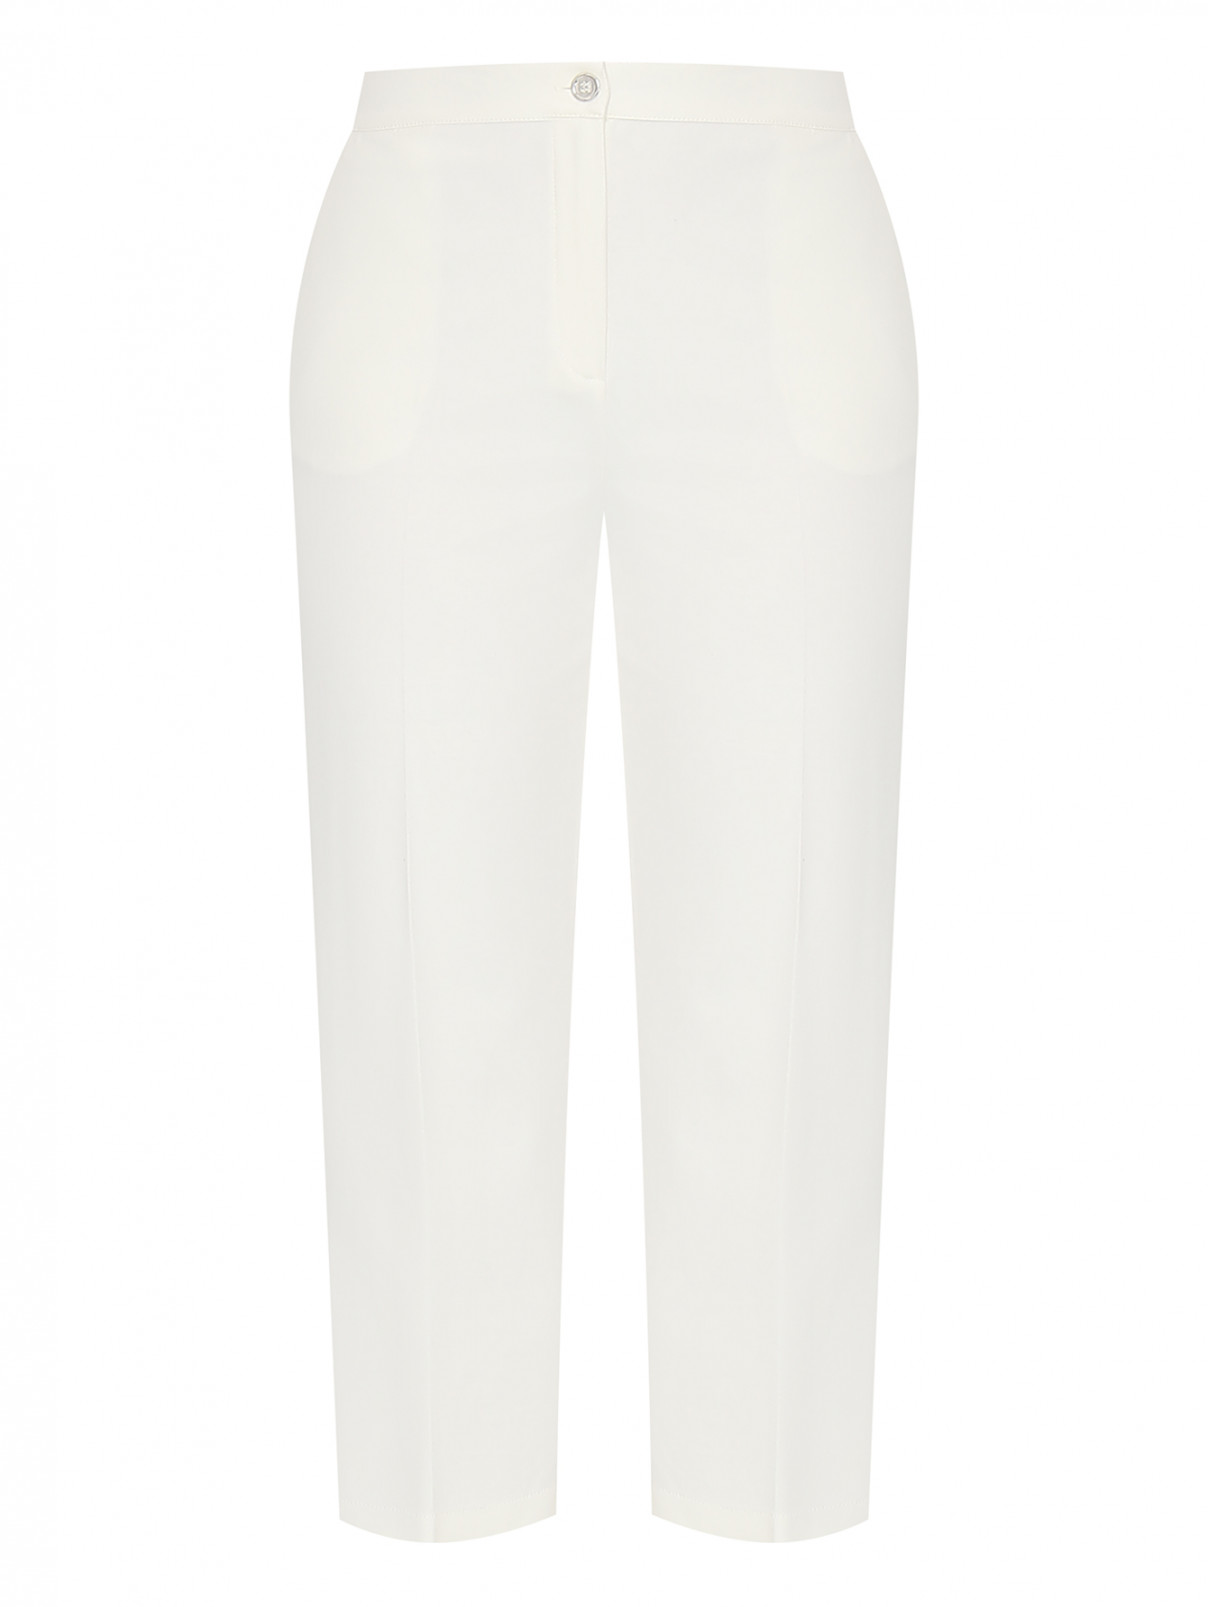 Укороченные брюки на резинке Persona by Marina Rinaldi  –  Общий вид  – Цвет:  Белый